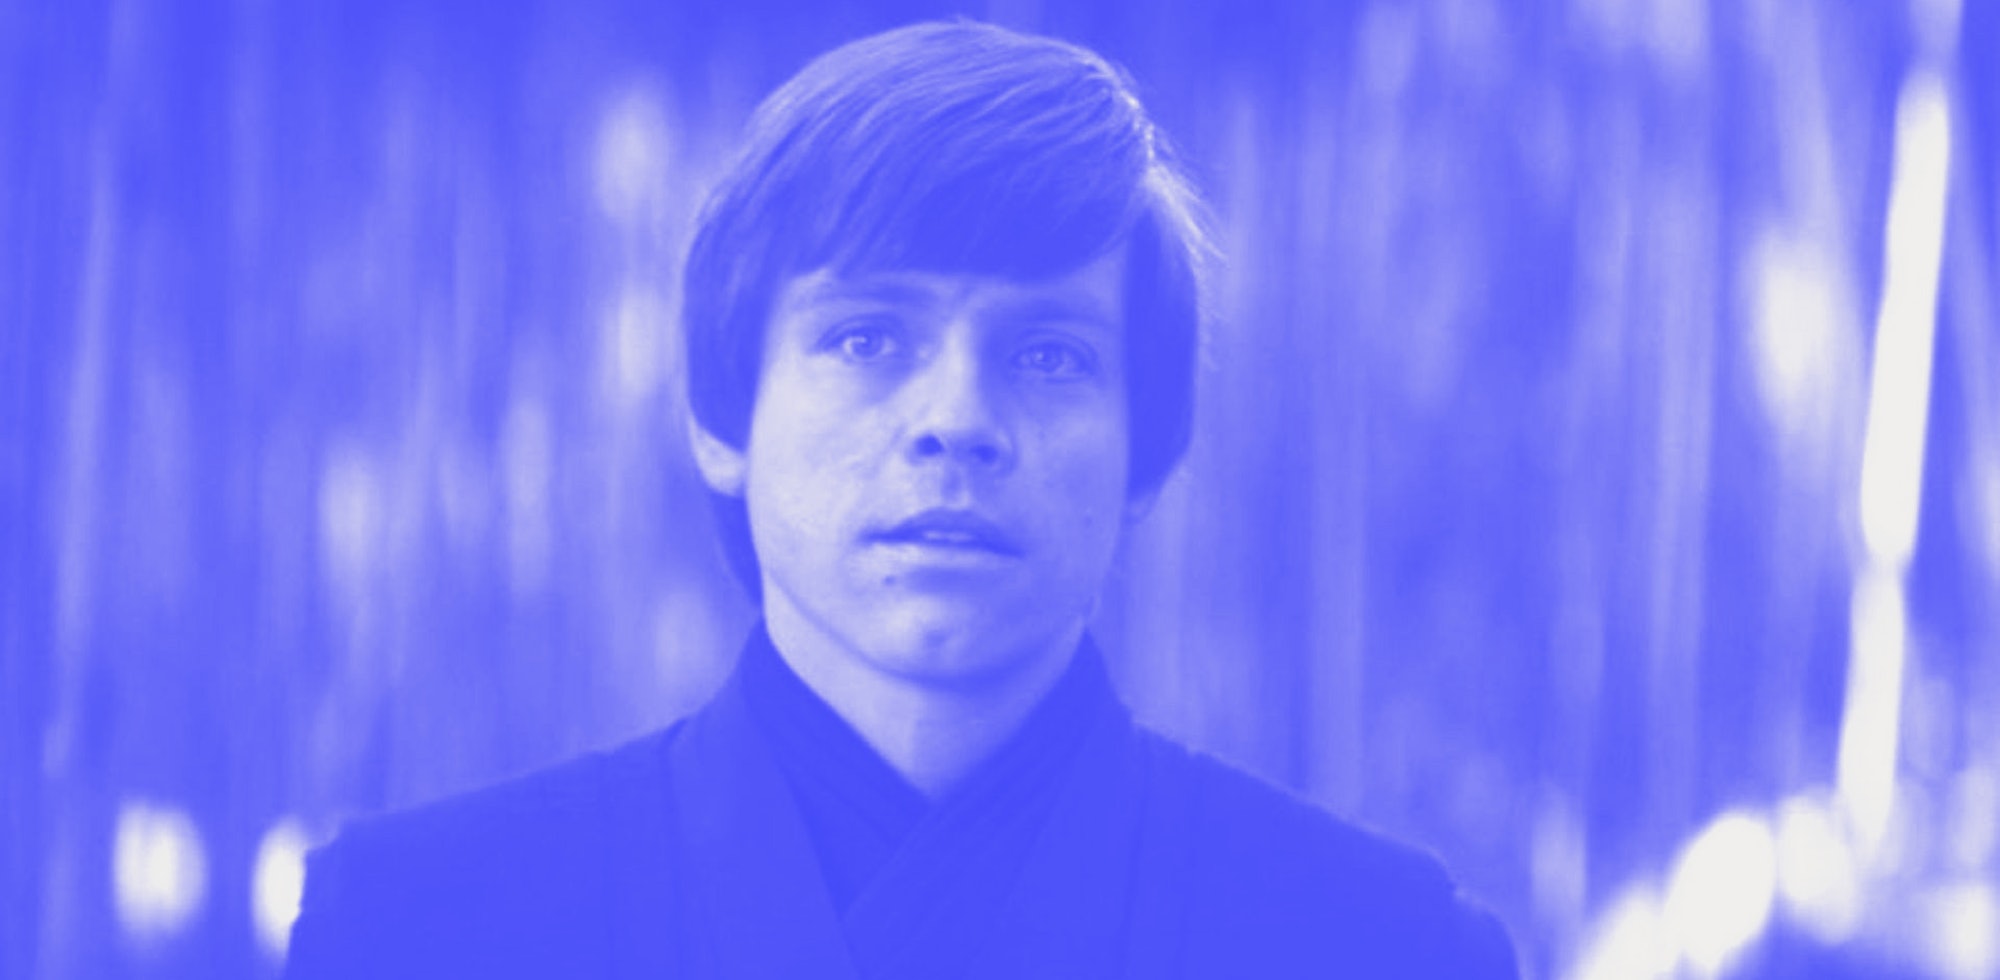 Luke Skywalker in The Book of Boba Fett